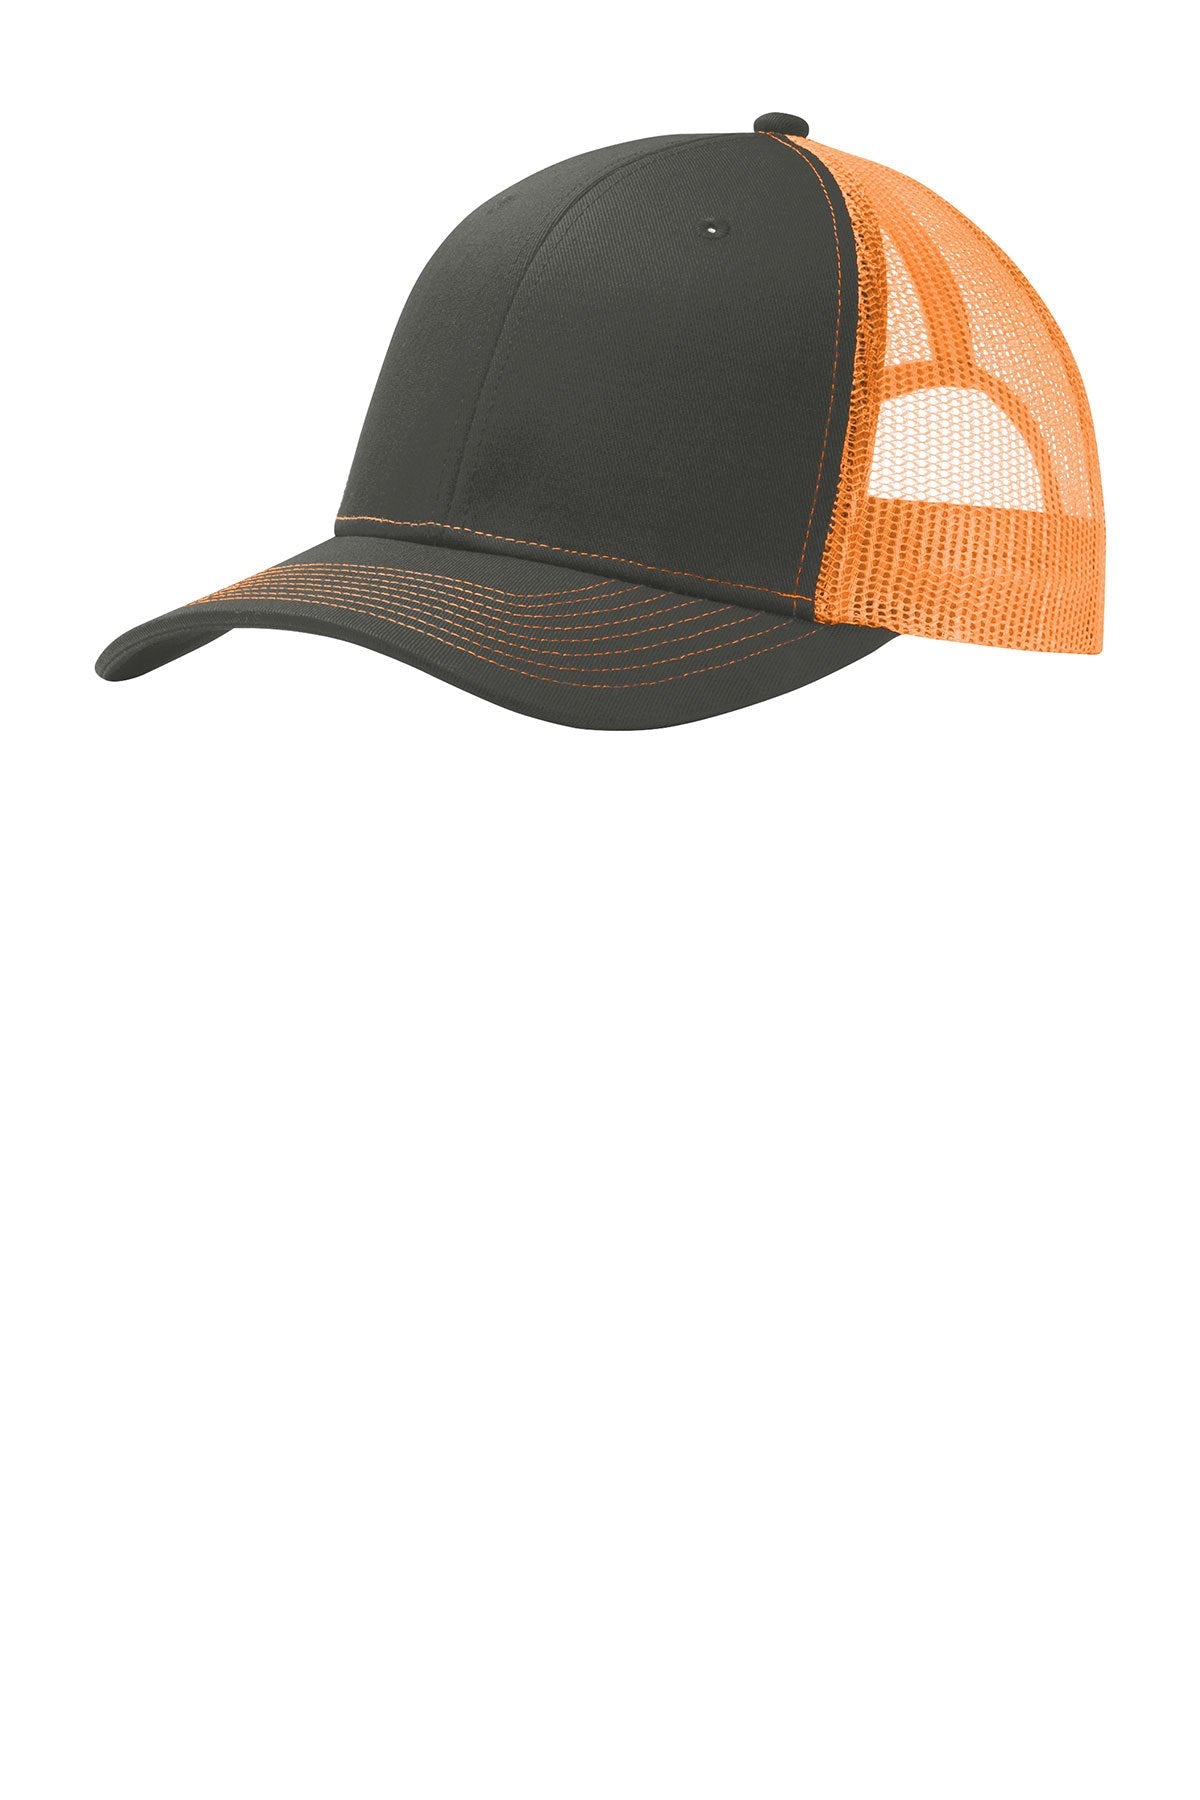 Port Authority Snapback Trucker Branded Caps, Grey Steel/ Neon Orange